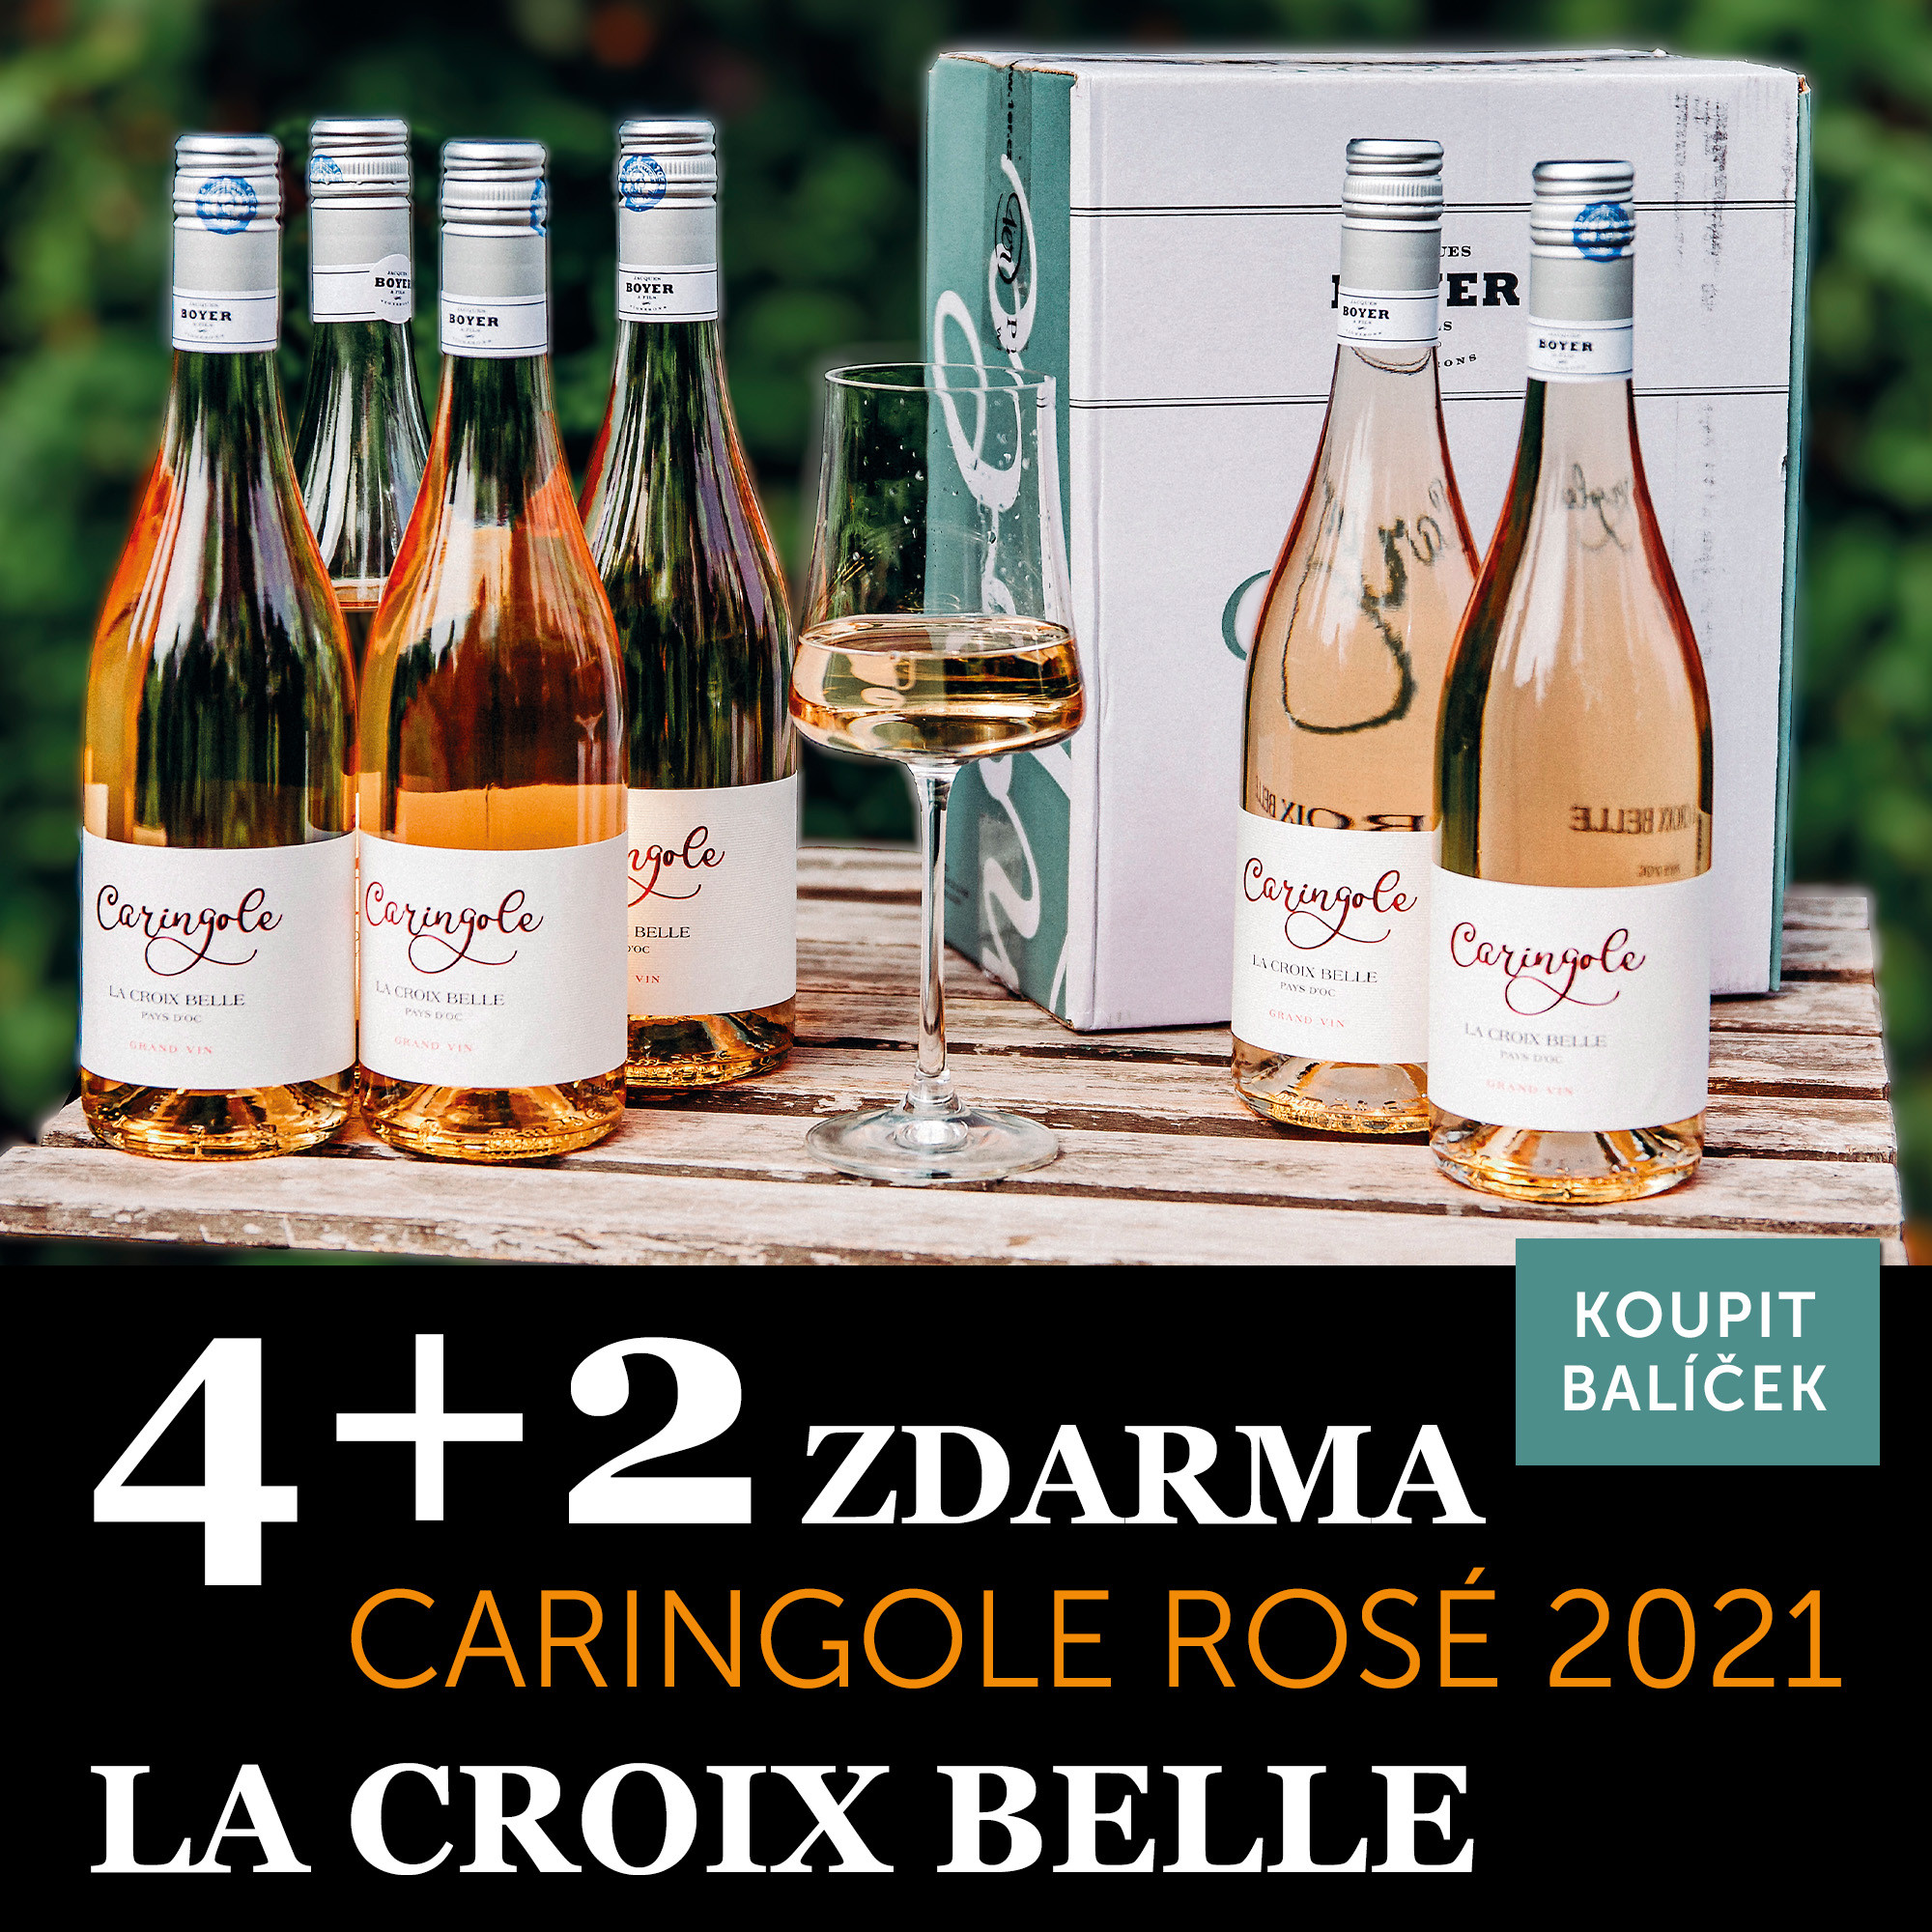 Víno měsíce června - Carignole rosé 4+2 zdarma - UKONČENO